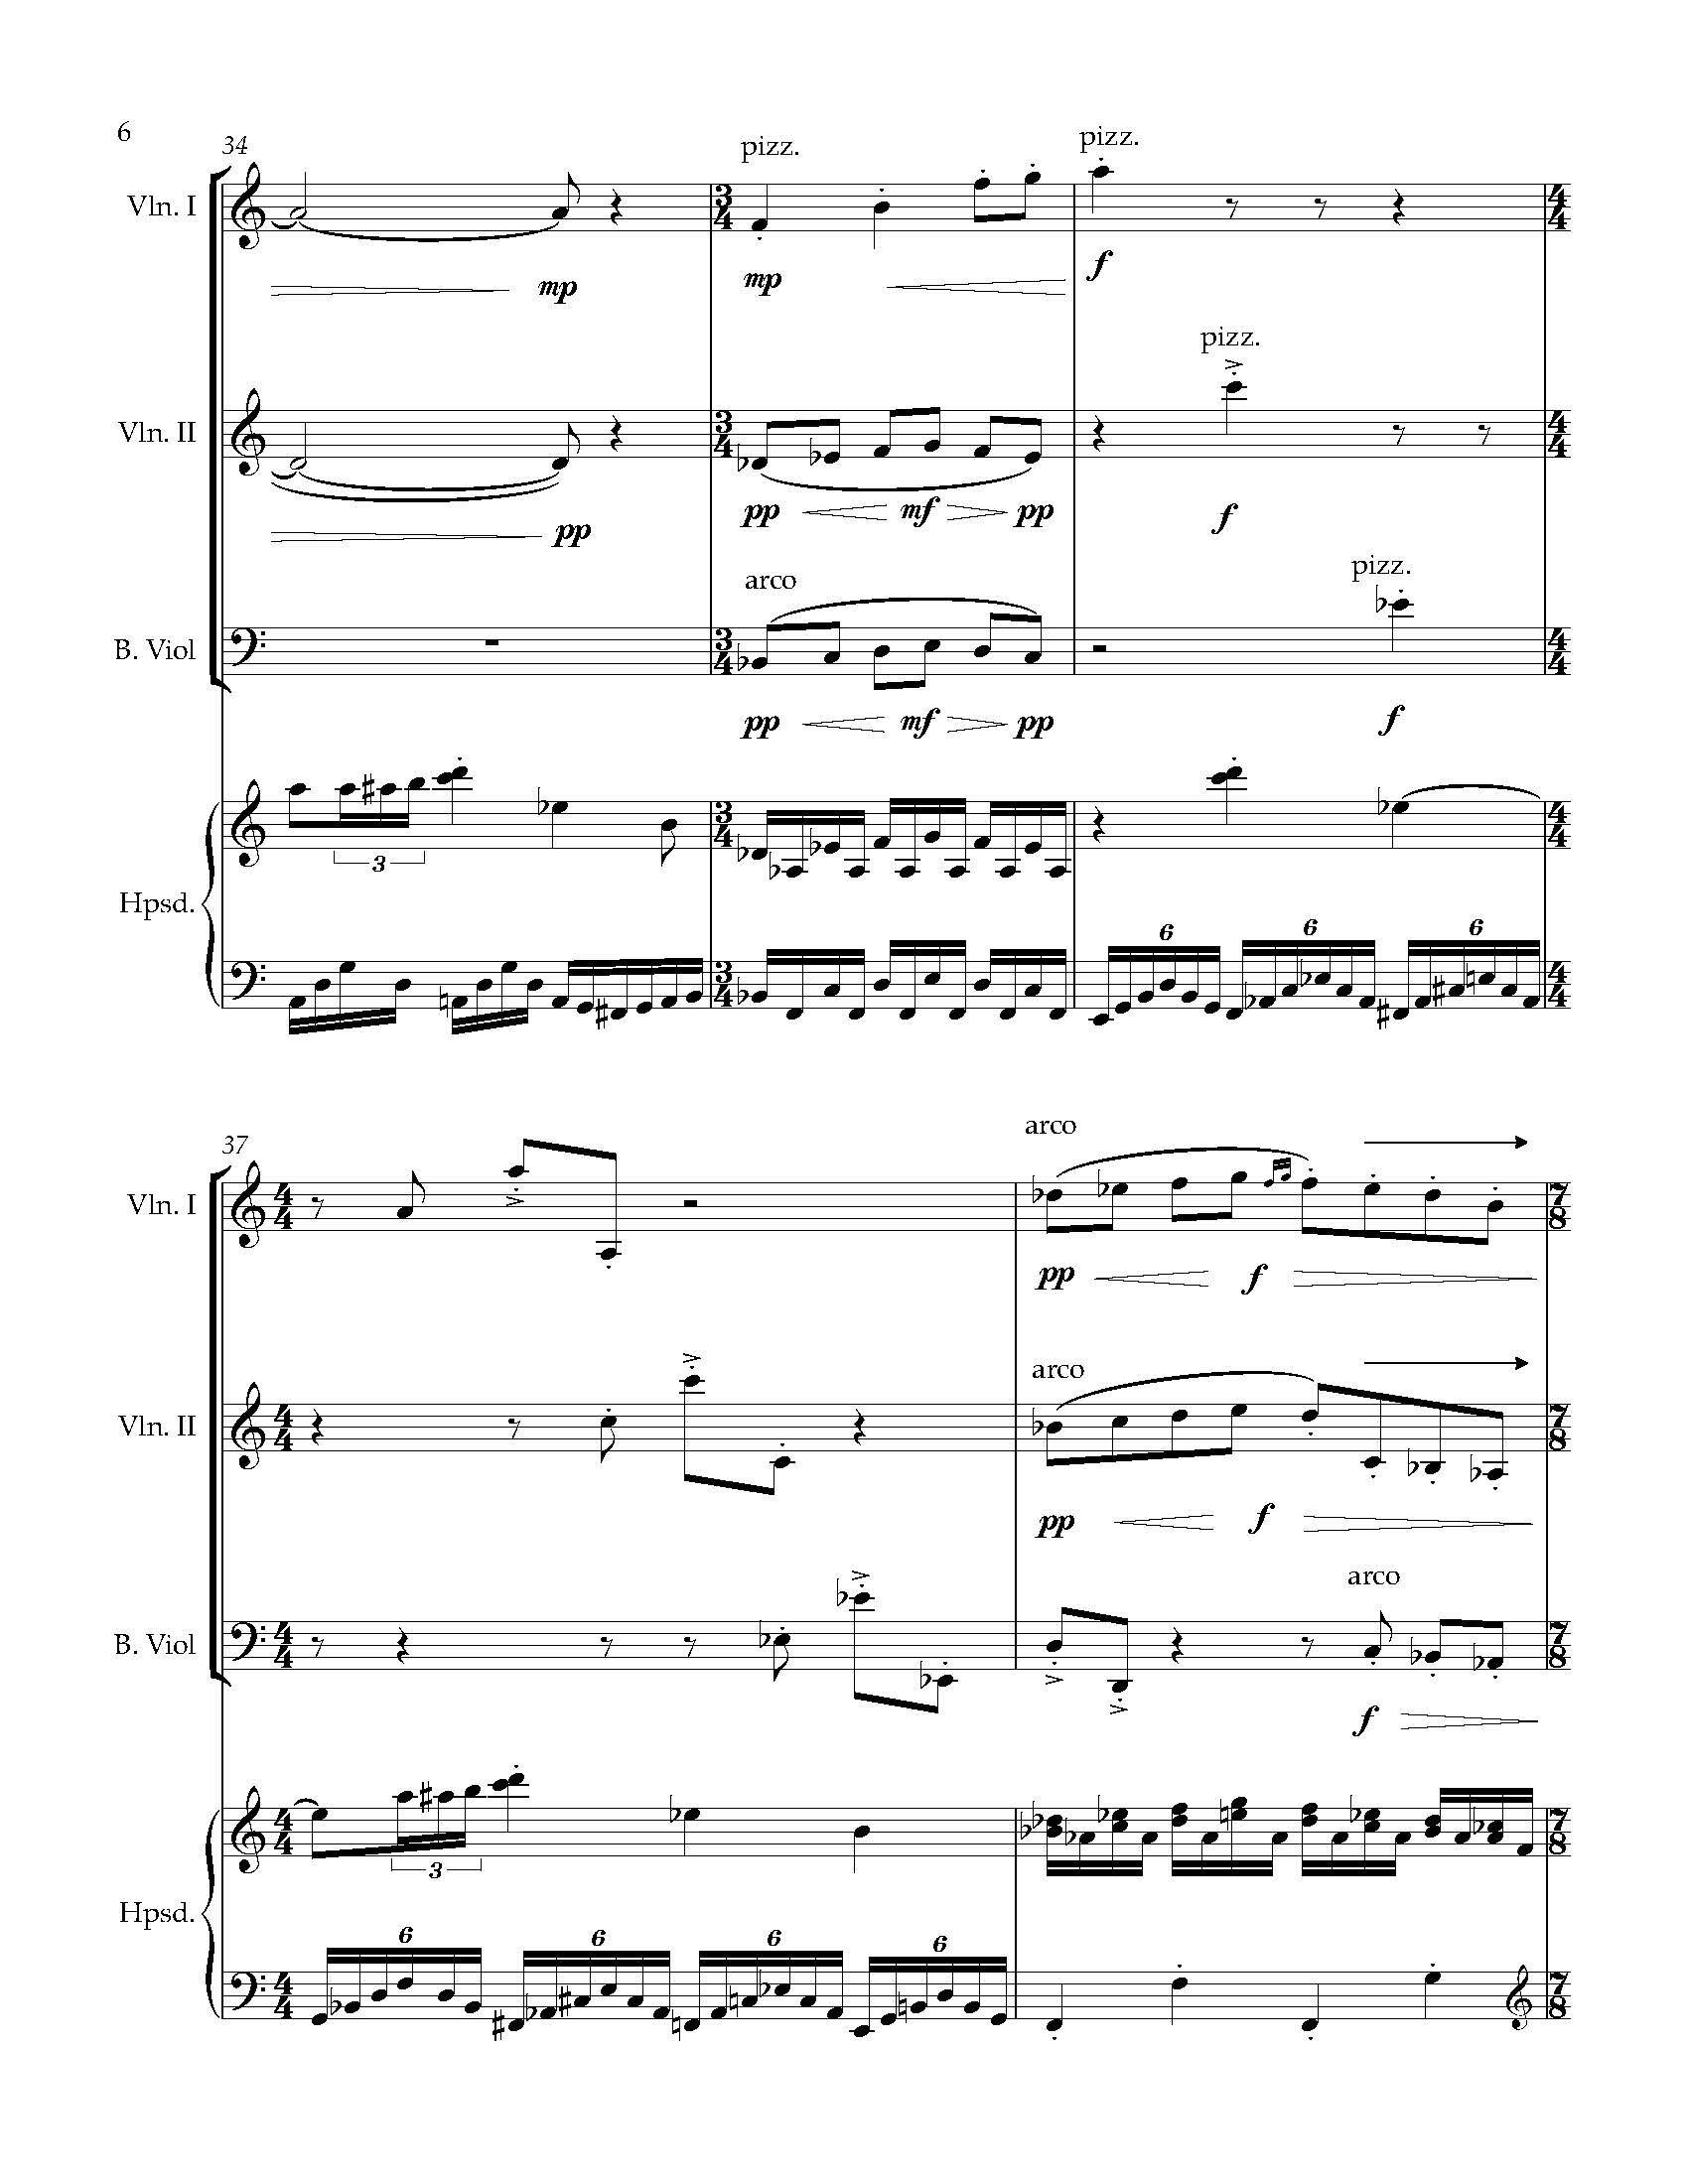 Sonata Sonare - Complete Score_Page_12.jpg